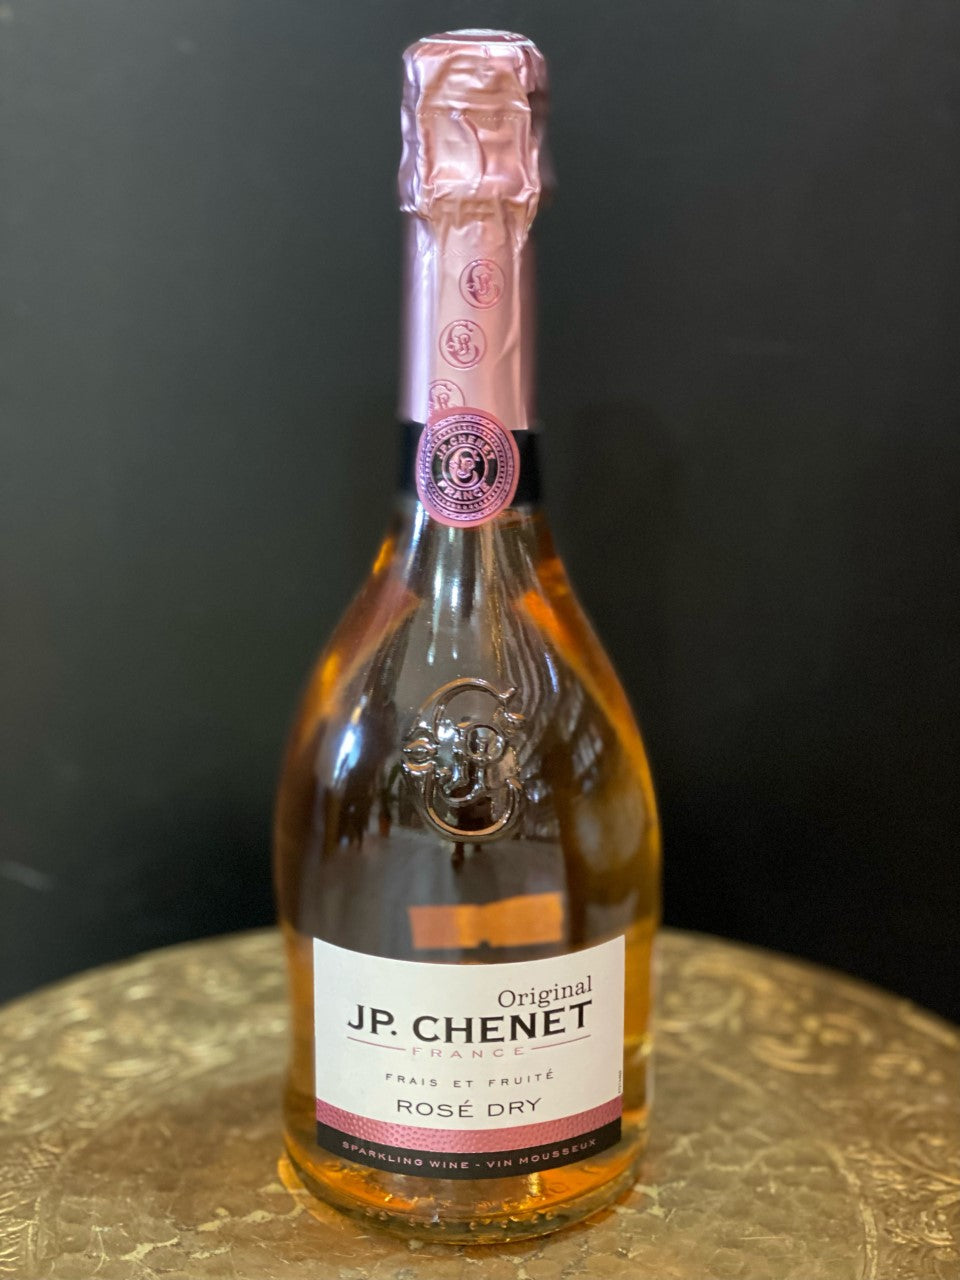 JP Chenet Sparkling Rose Dry